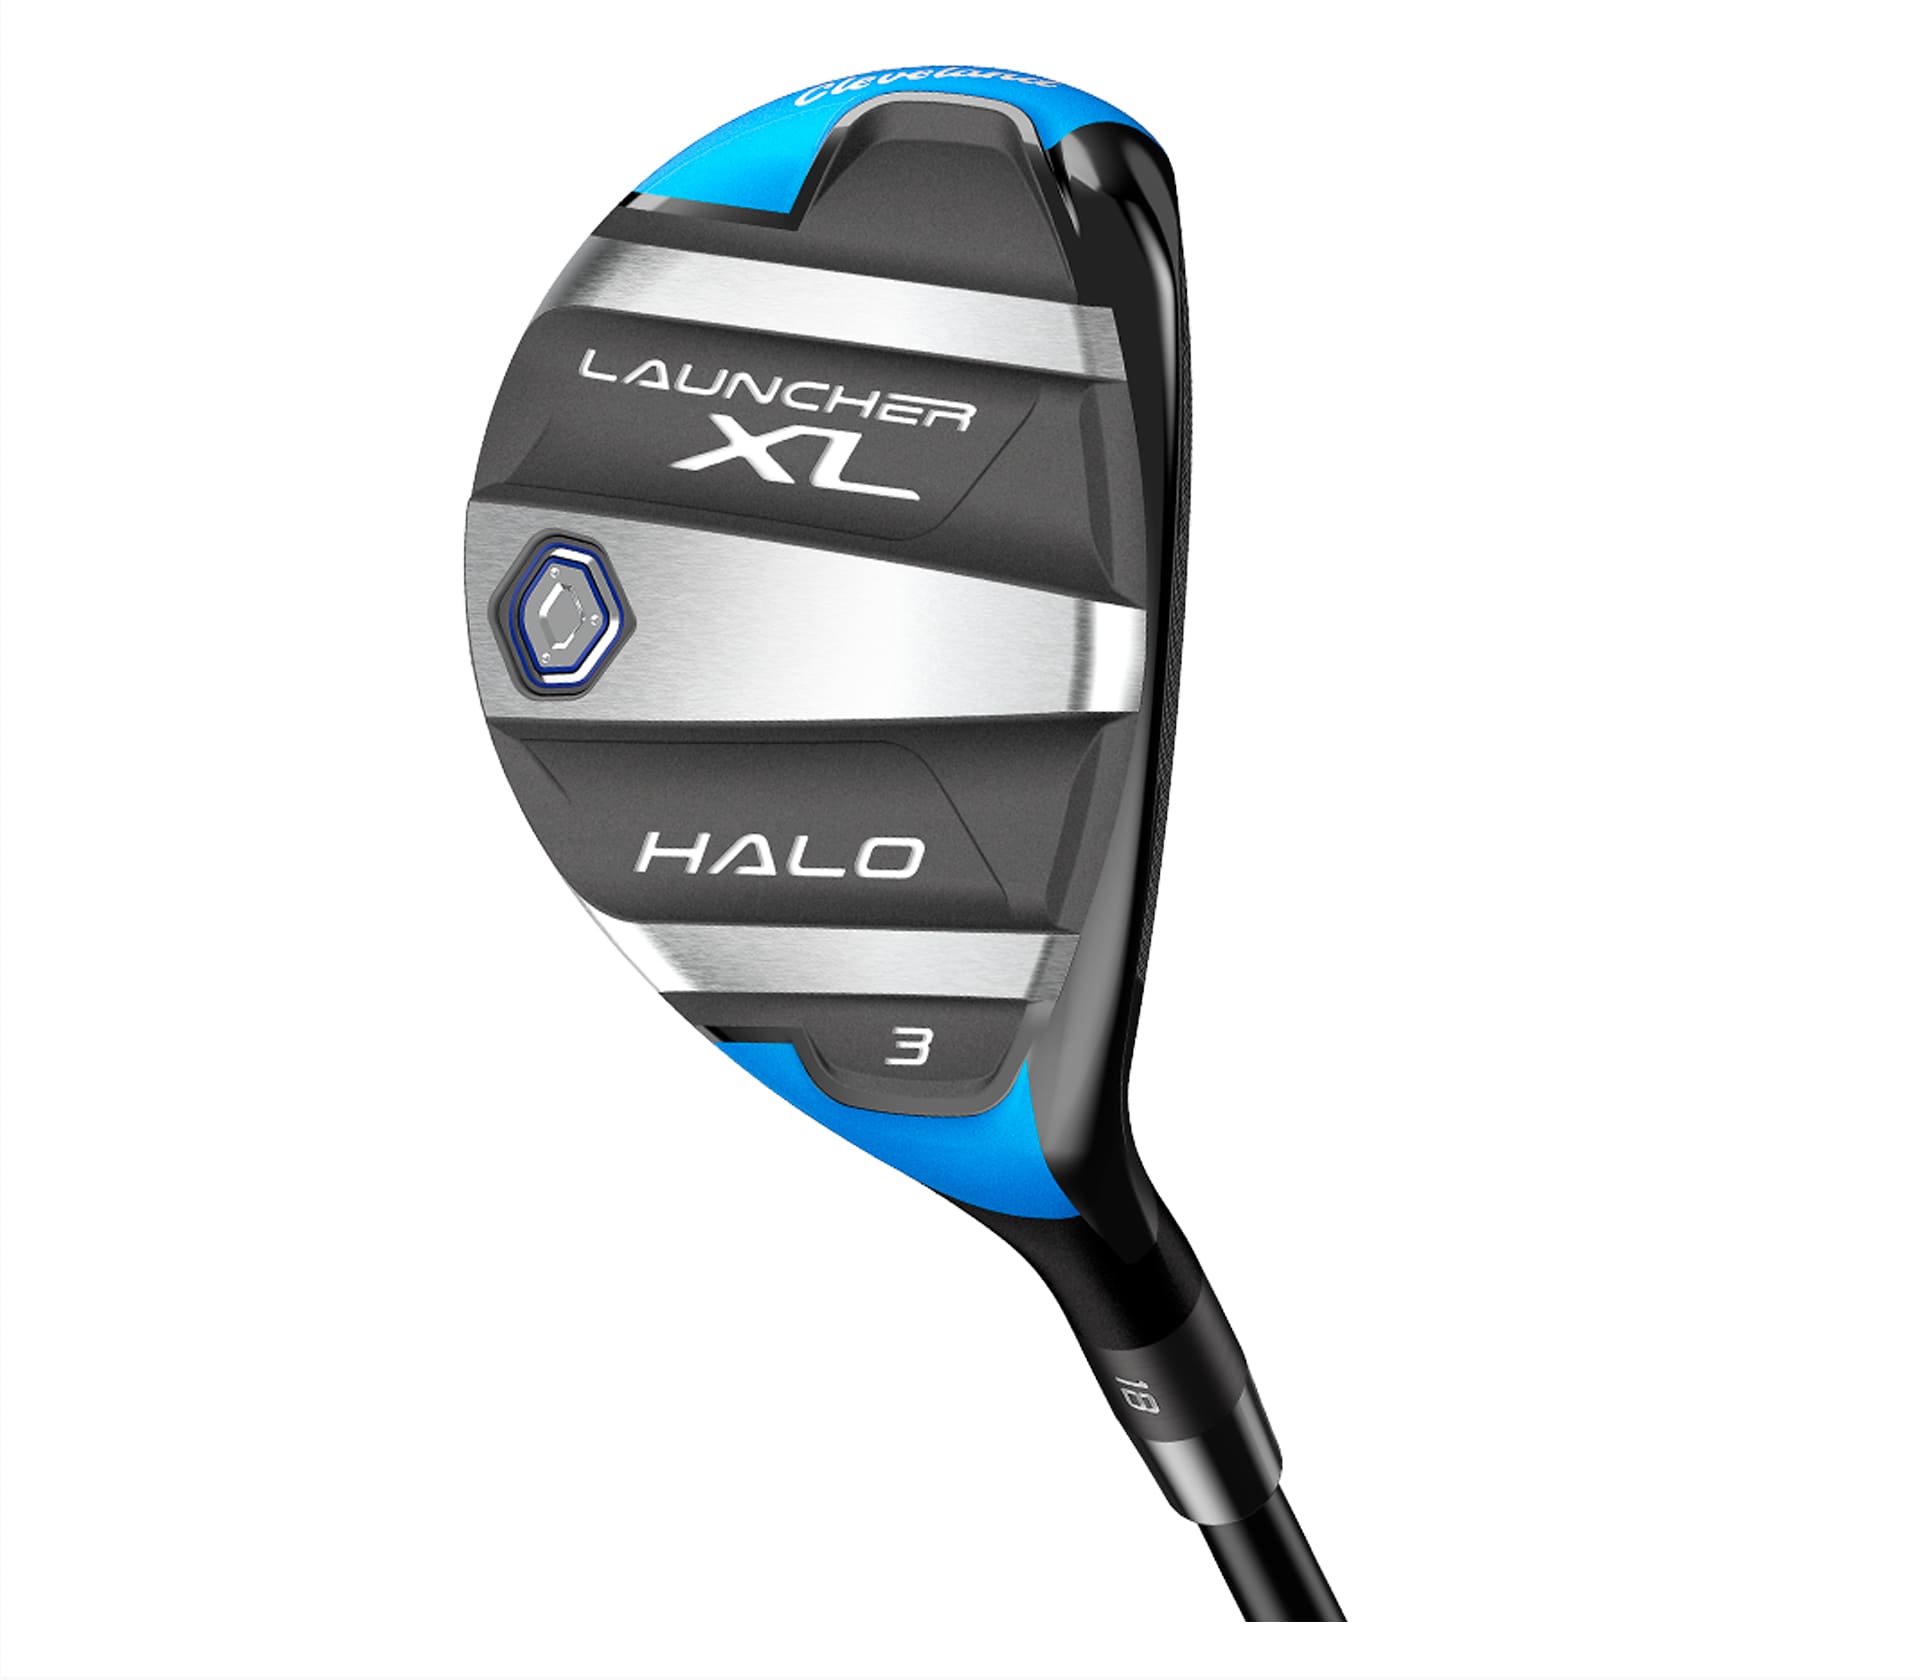 Launcher XL Halo Híbrido